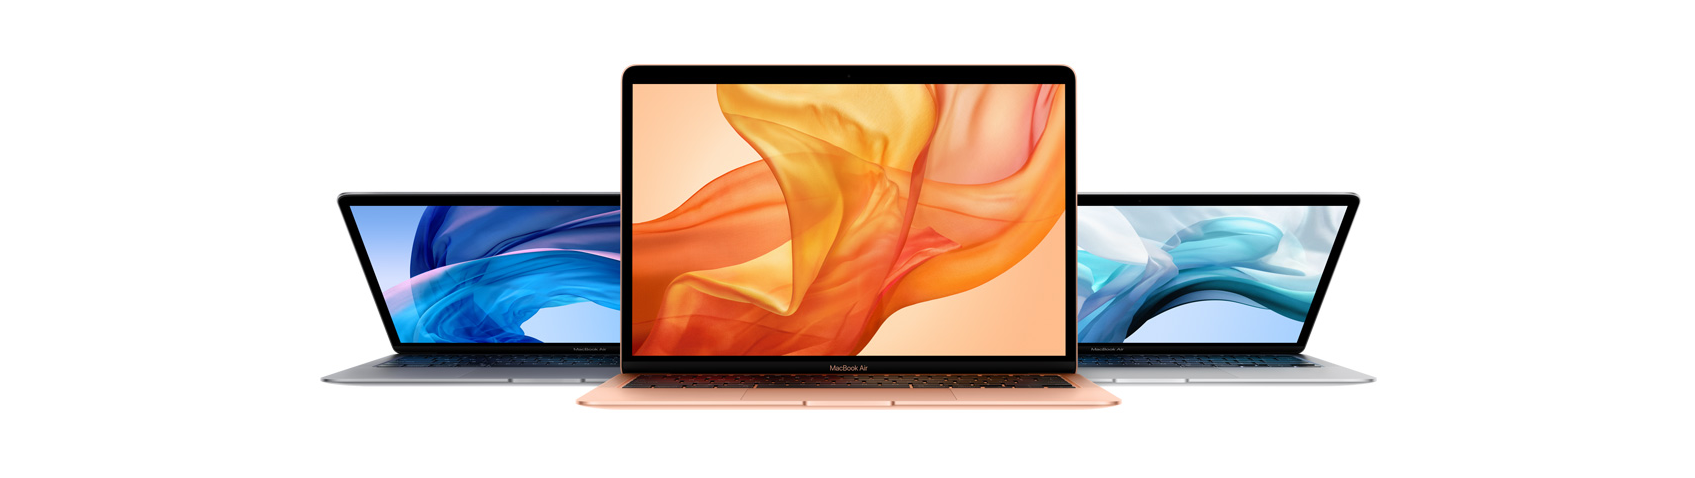 Apple-MacBook-Air-itzoo